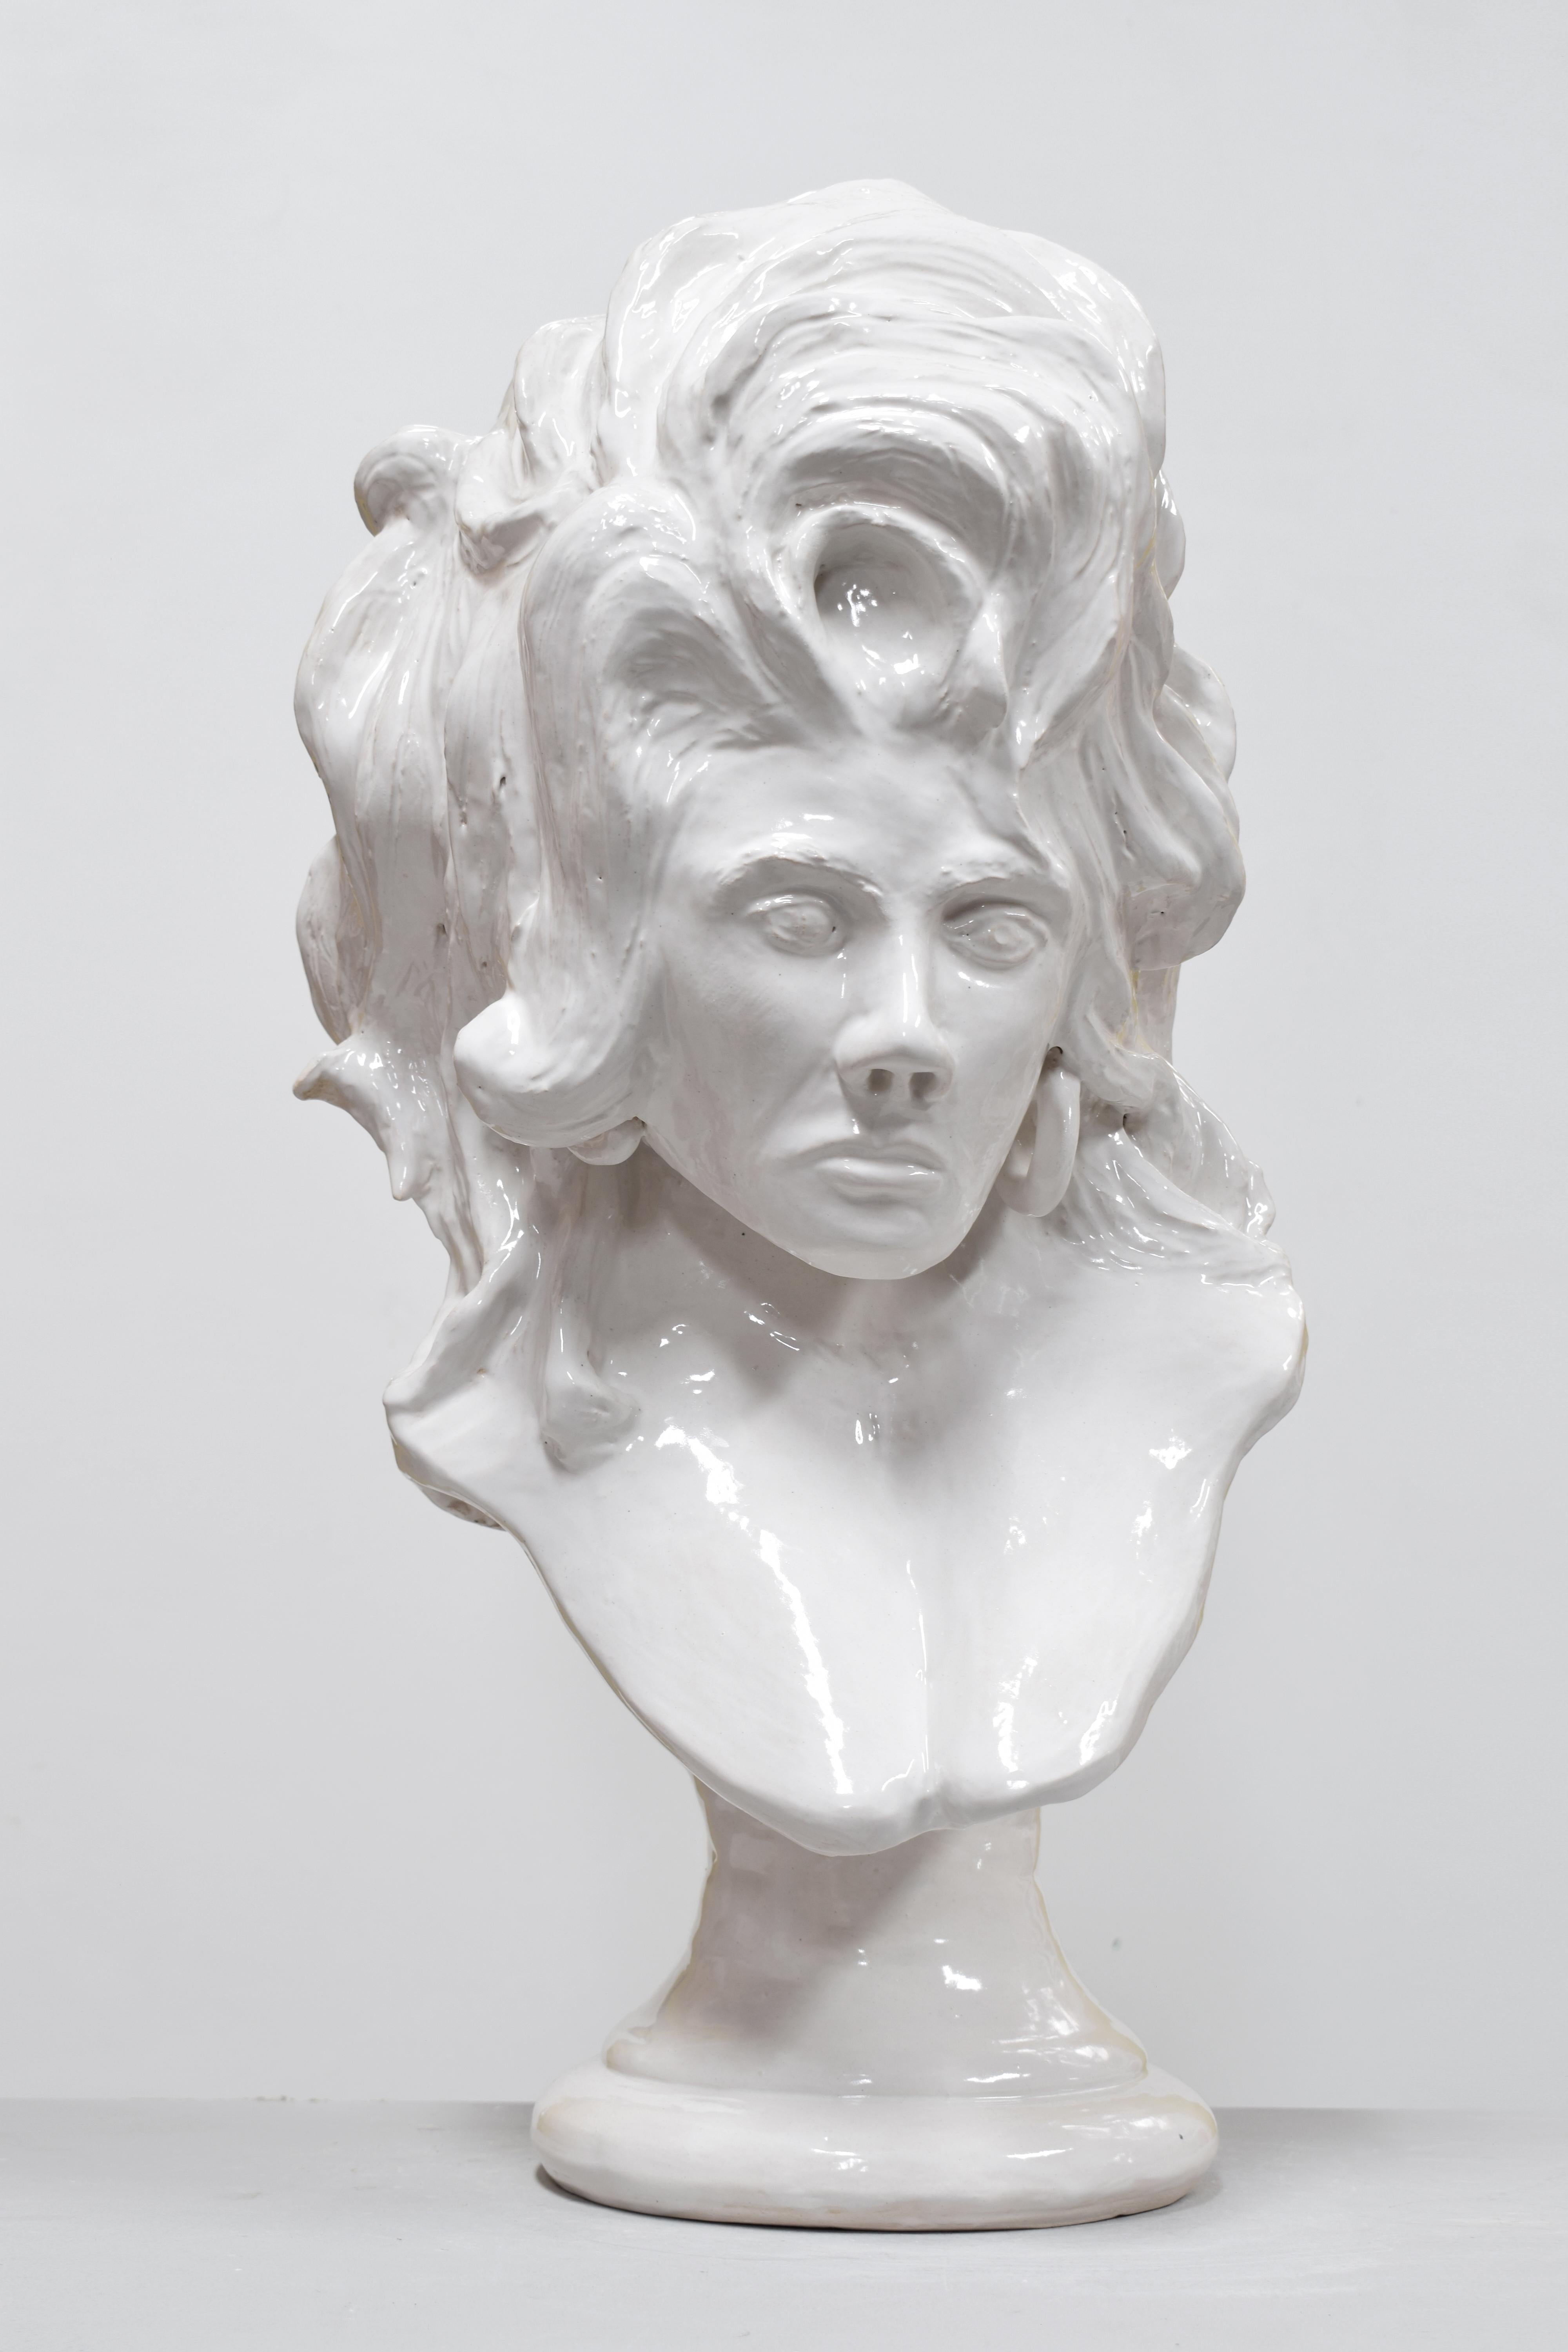 Chris Rijk Figurative Sculpture - Self portrait as Dolly Parton